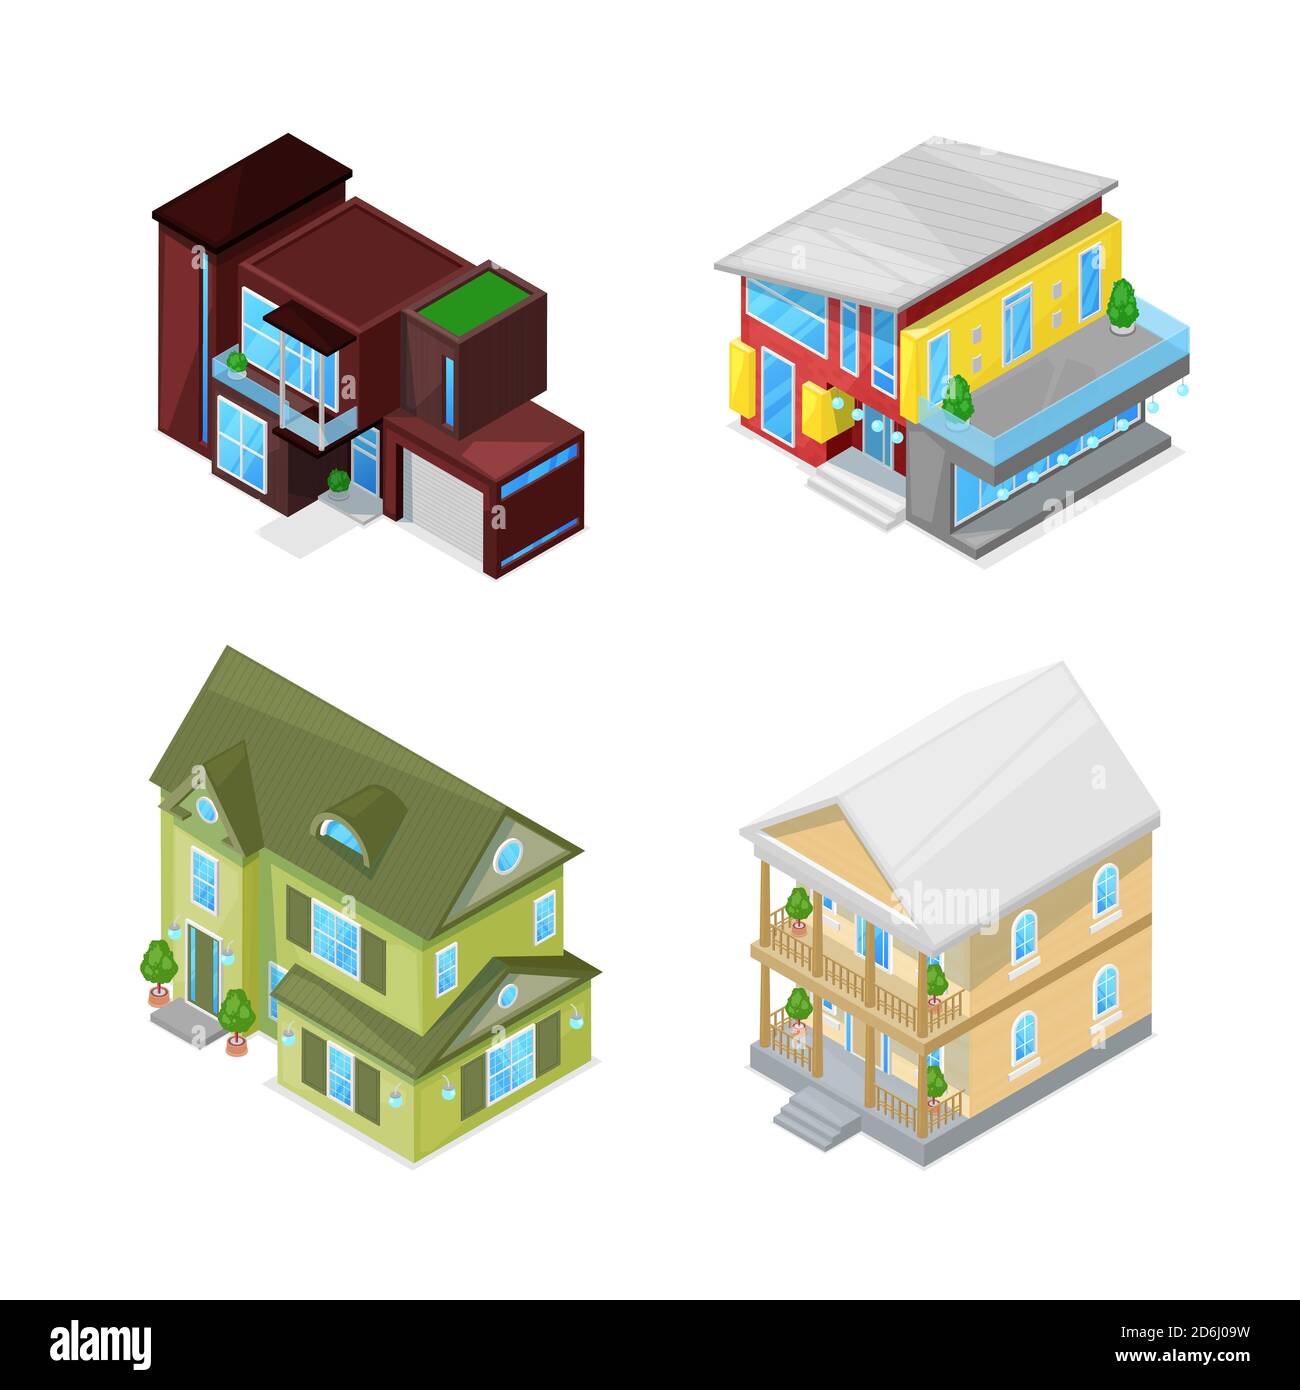 Case classiche e moderne. illustrazione vettoriale isolata in stile isometrico 3d. Icone immobiliari. Illustrazione Vettoriale